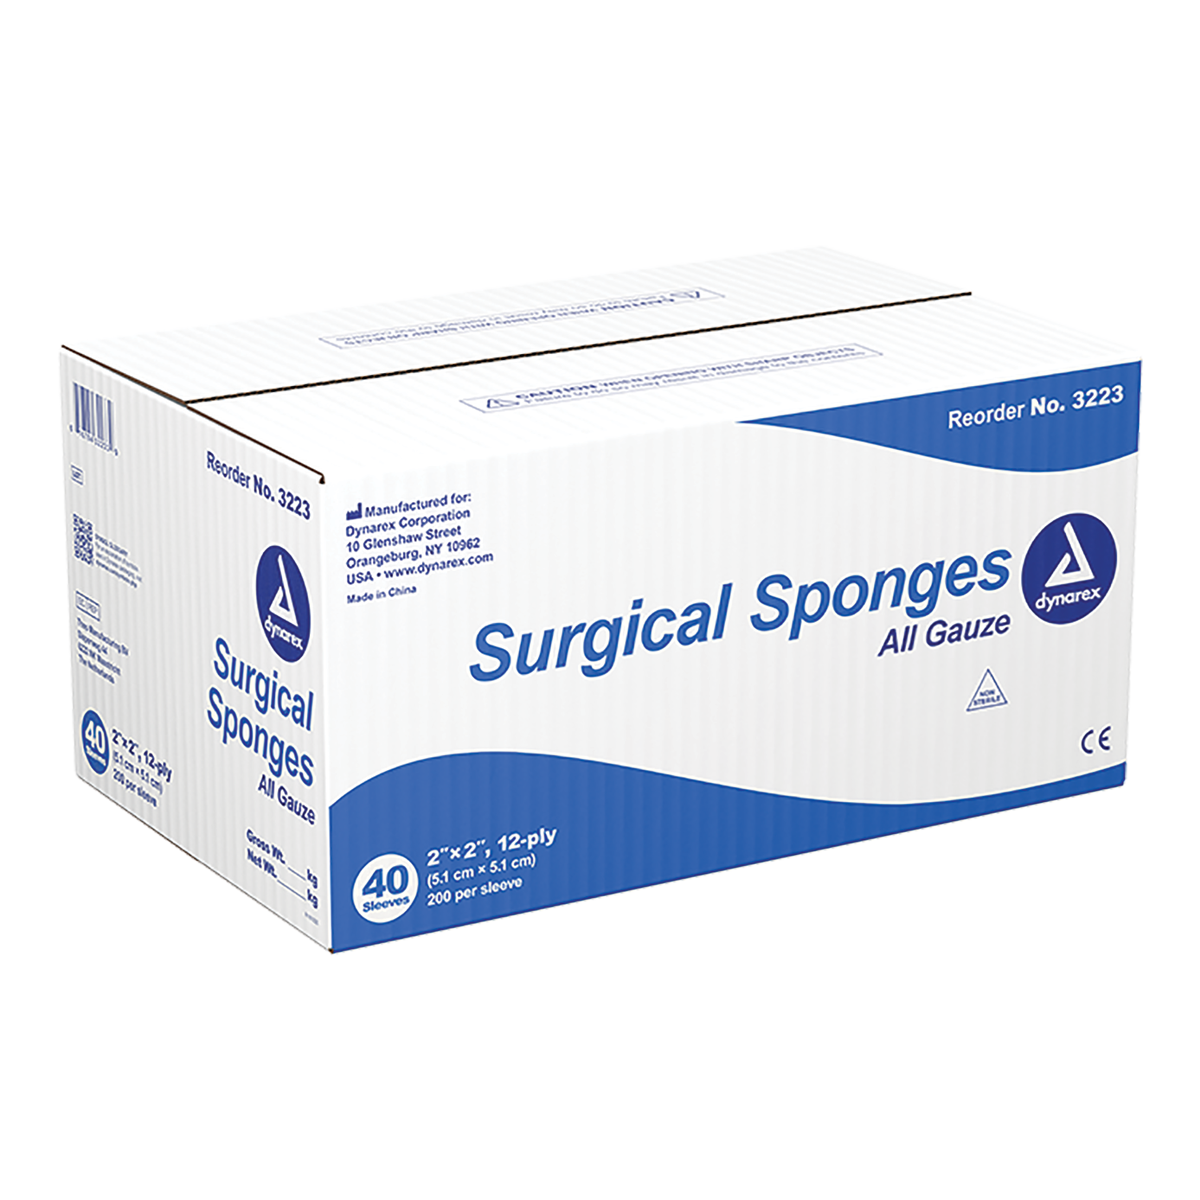 Dynarex Surgical Gauze Sponges